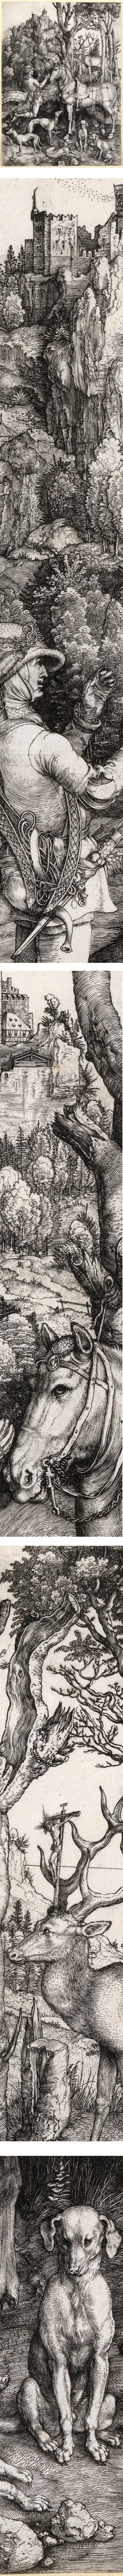 St Eustace, Albrecht Durer, engraving